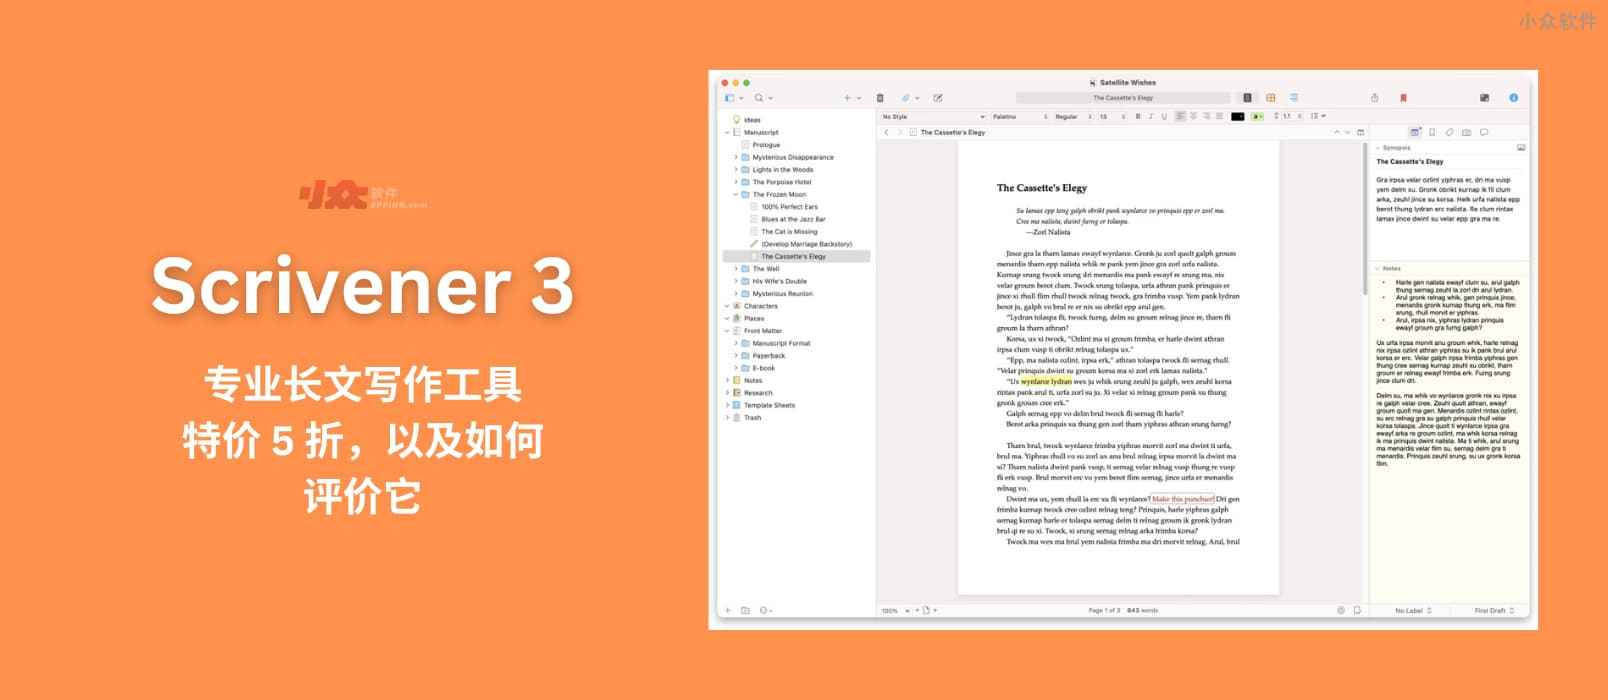 Scrivener 3 – 专业写作软件，特价 5 折